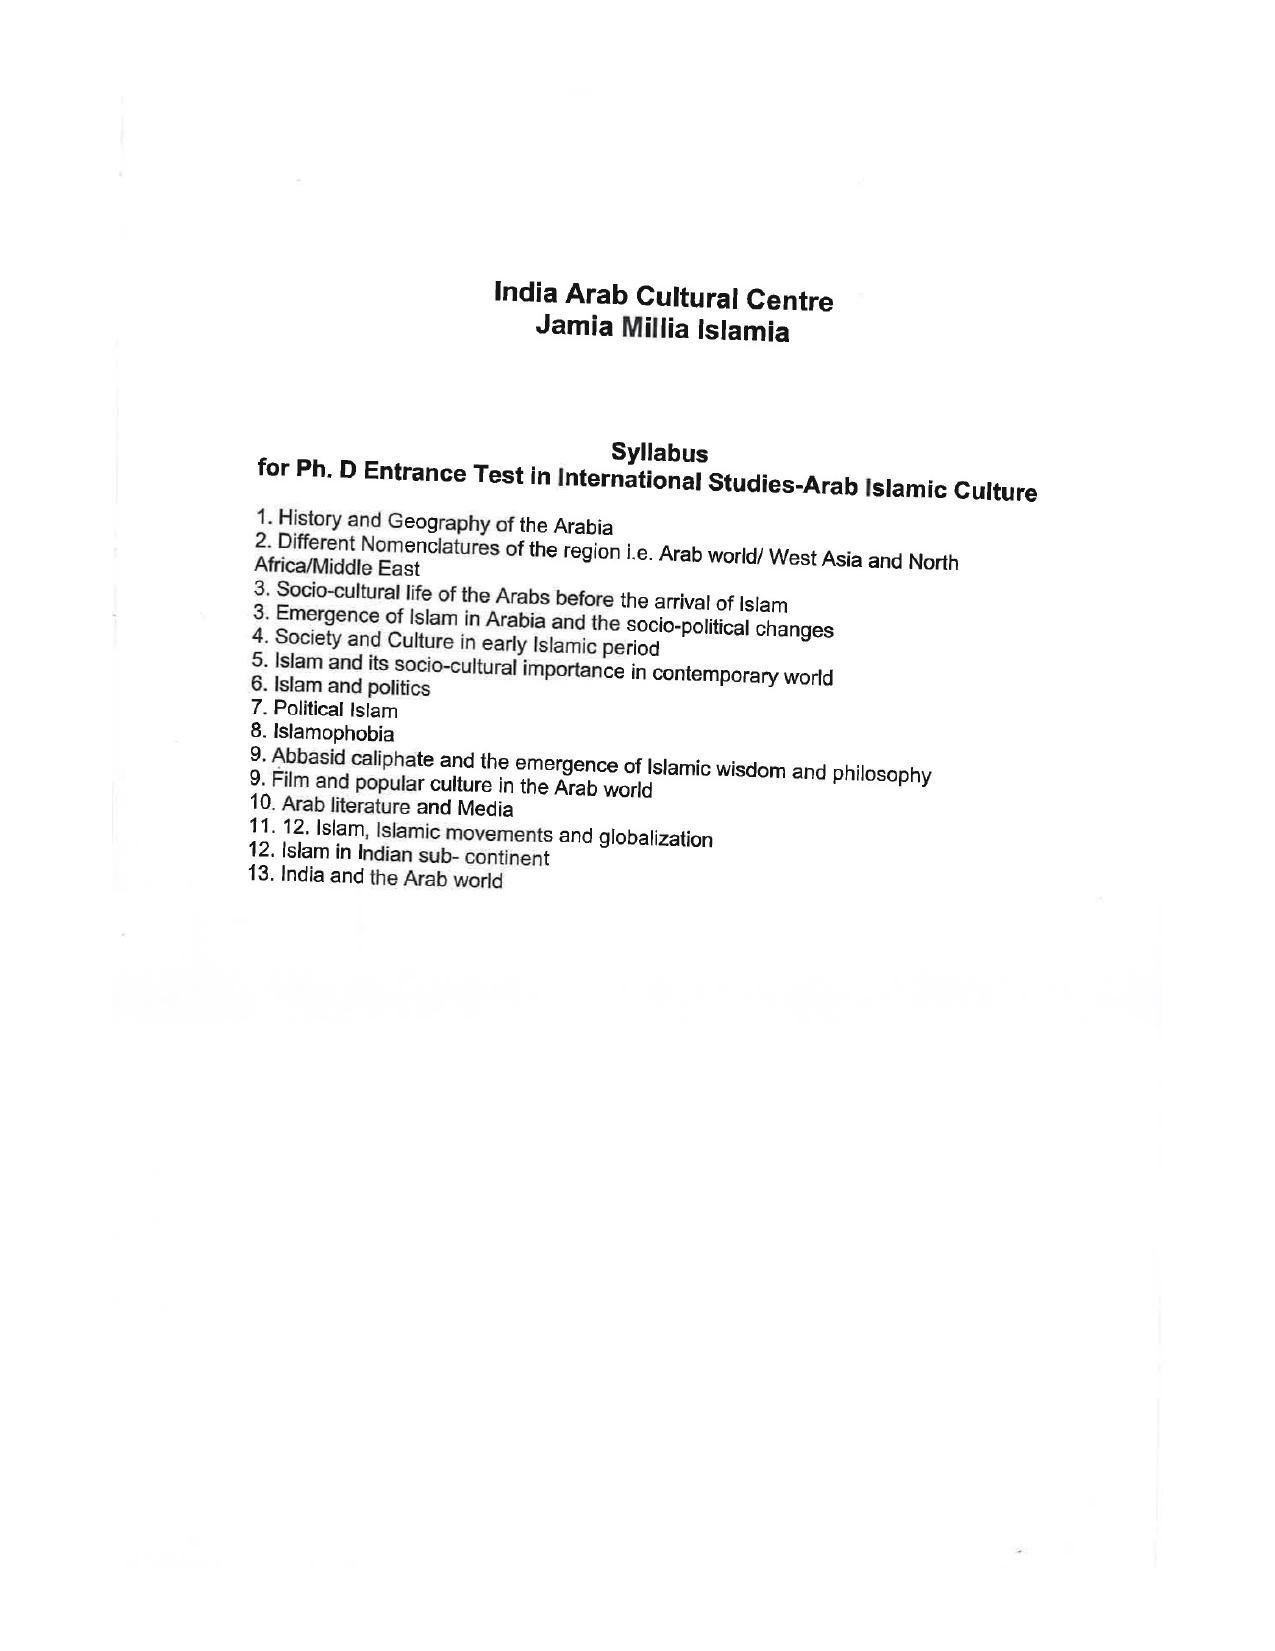 JMI Entrance Exam FACULTY OF SOCIAL SCIENCES Syllabus - Page 22